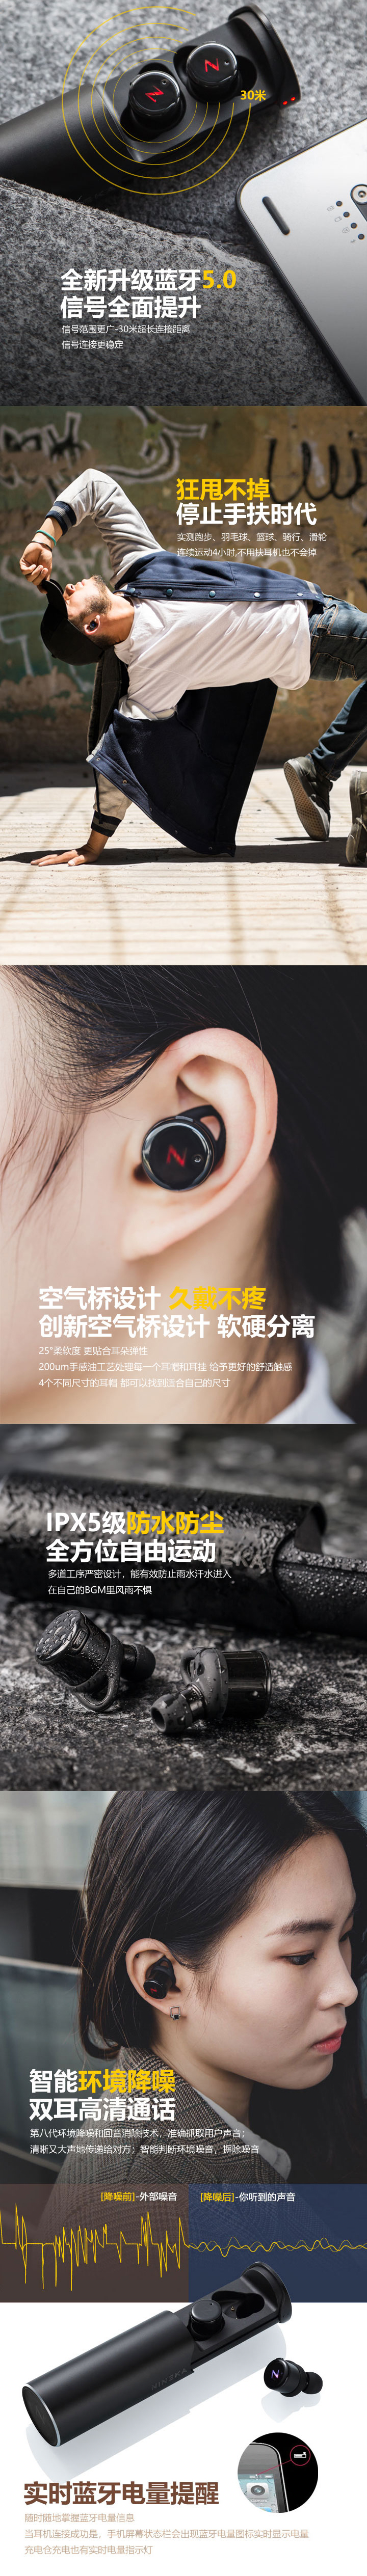 【轻体验】南卡蓝牙耳机免费试用,评测